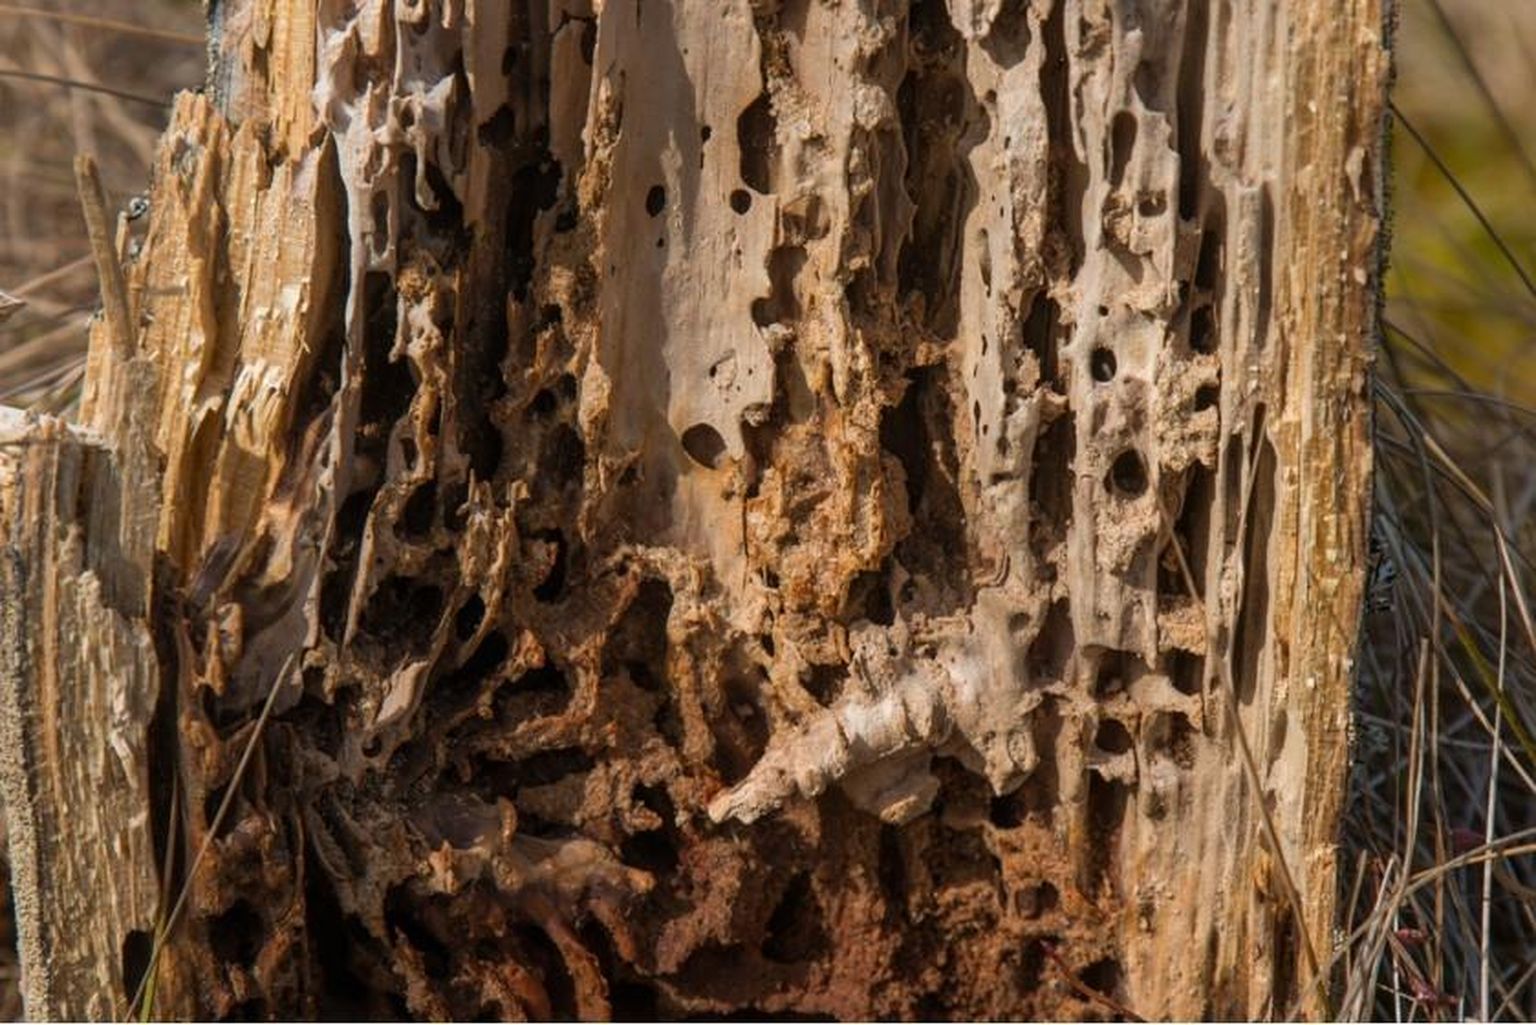 Kuigi viimased metsaekspertiisi andmed näitavad kuuse-kooreüraski kahjustatud puiduga ala suuremana kui varem, võib siiski rääkida putuka arvukuse vähenemisest, sest ekspertiisid võivad kajastada ka paari aasta taguseid kahjustusi.